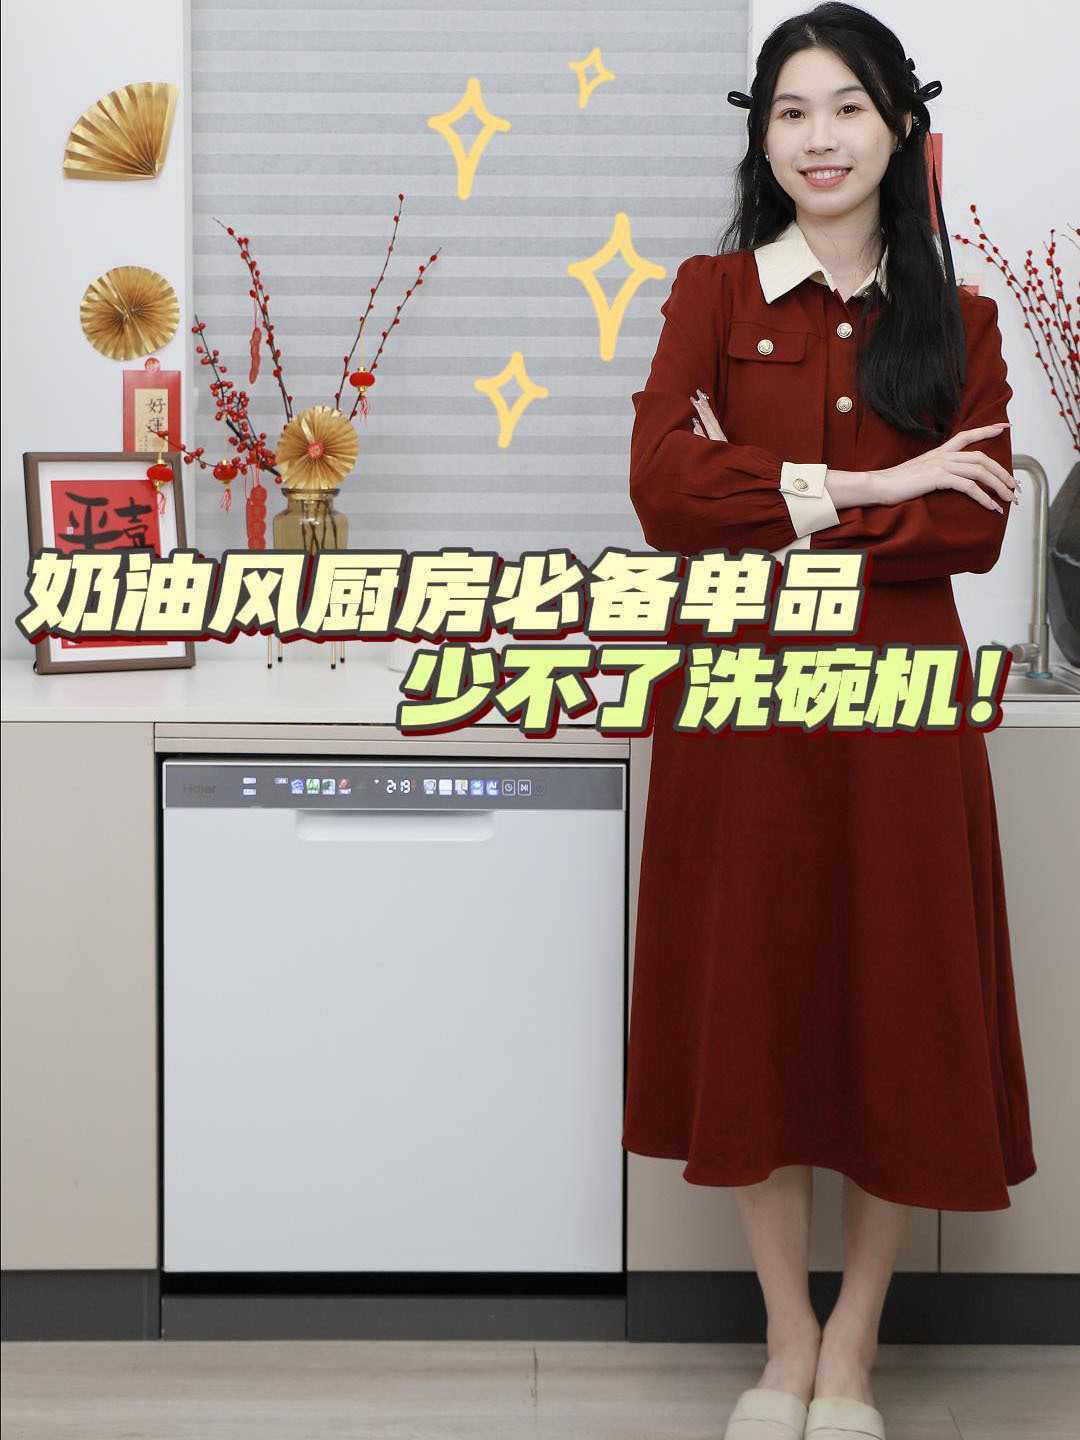 口播—海尔洗碗机——广州